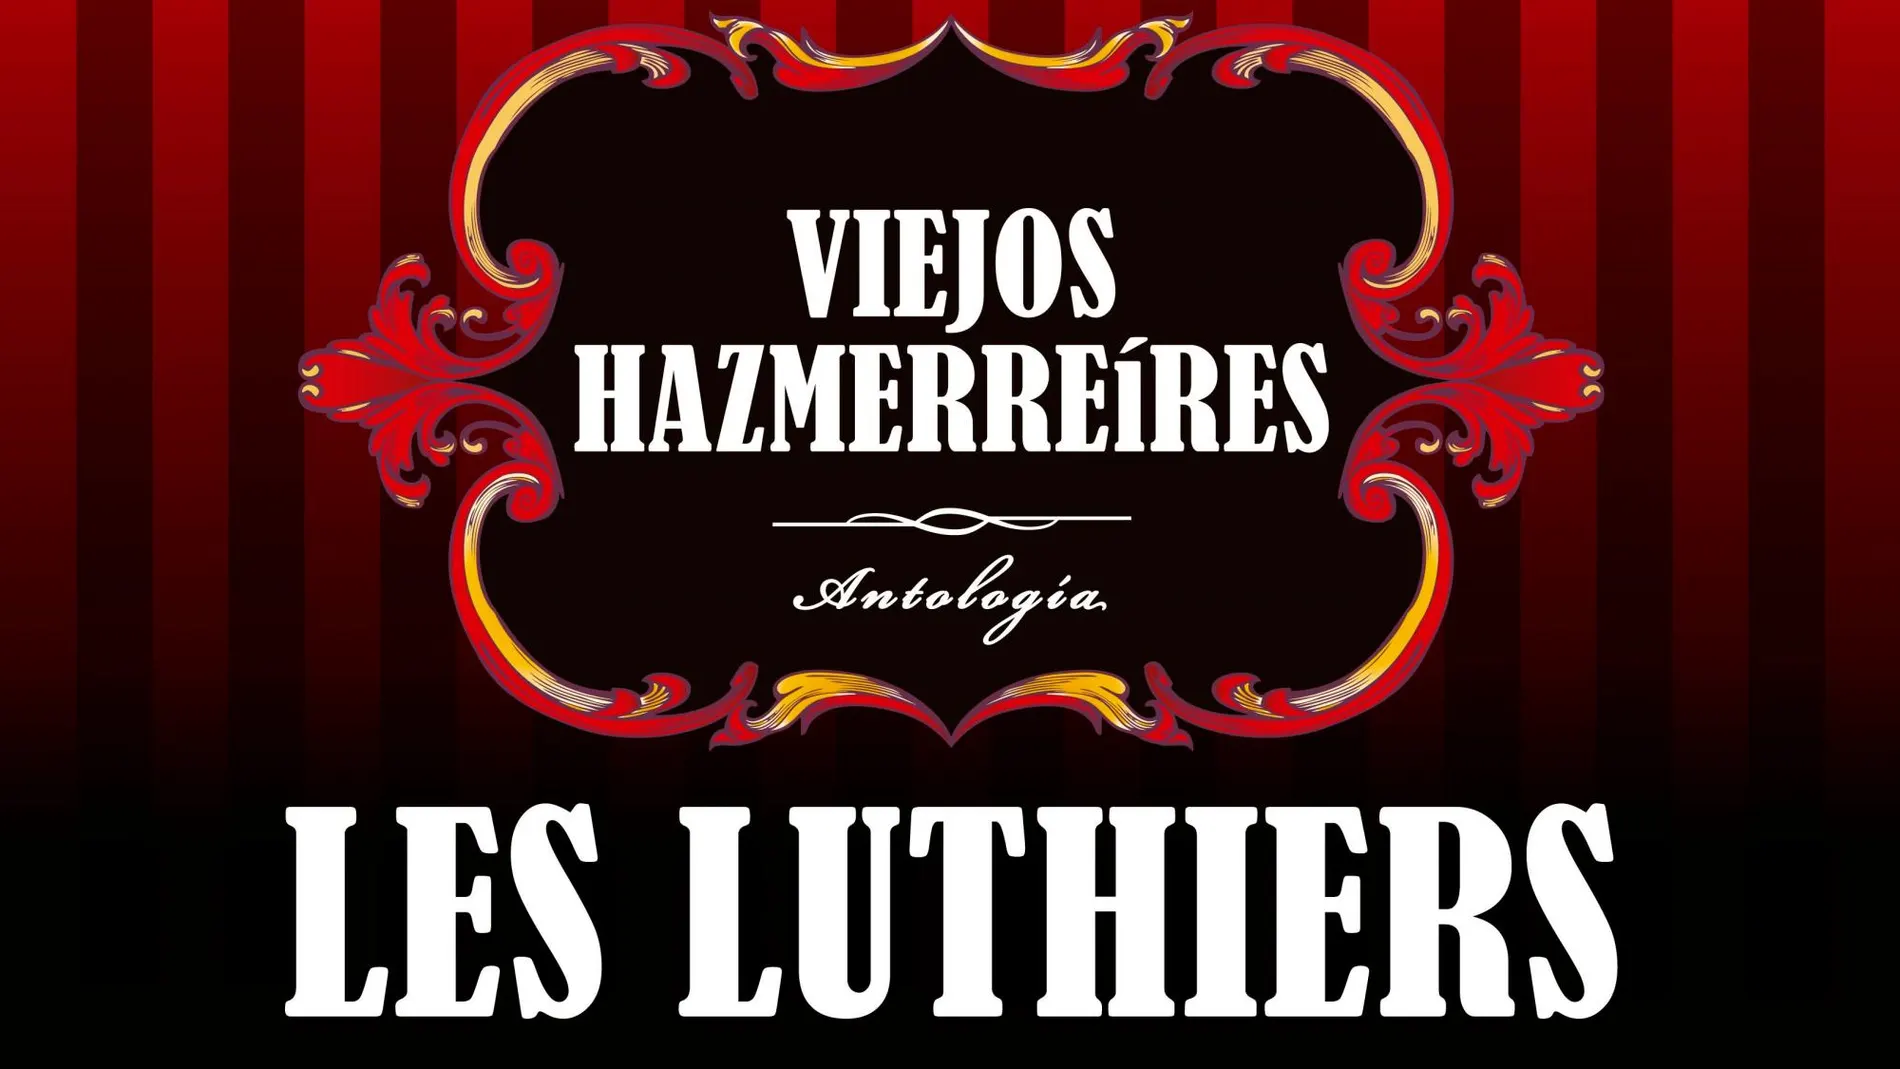 Les Luthiers: “Viejos Hazmerreíres” triunfa de nuevo